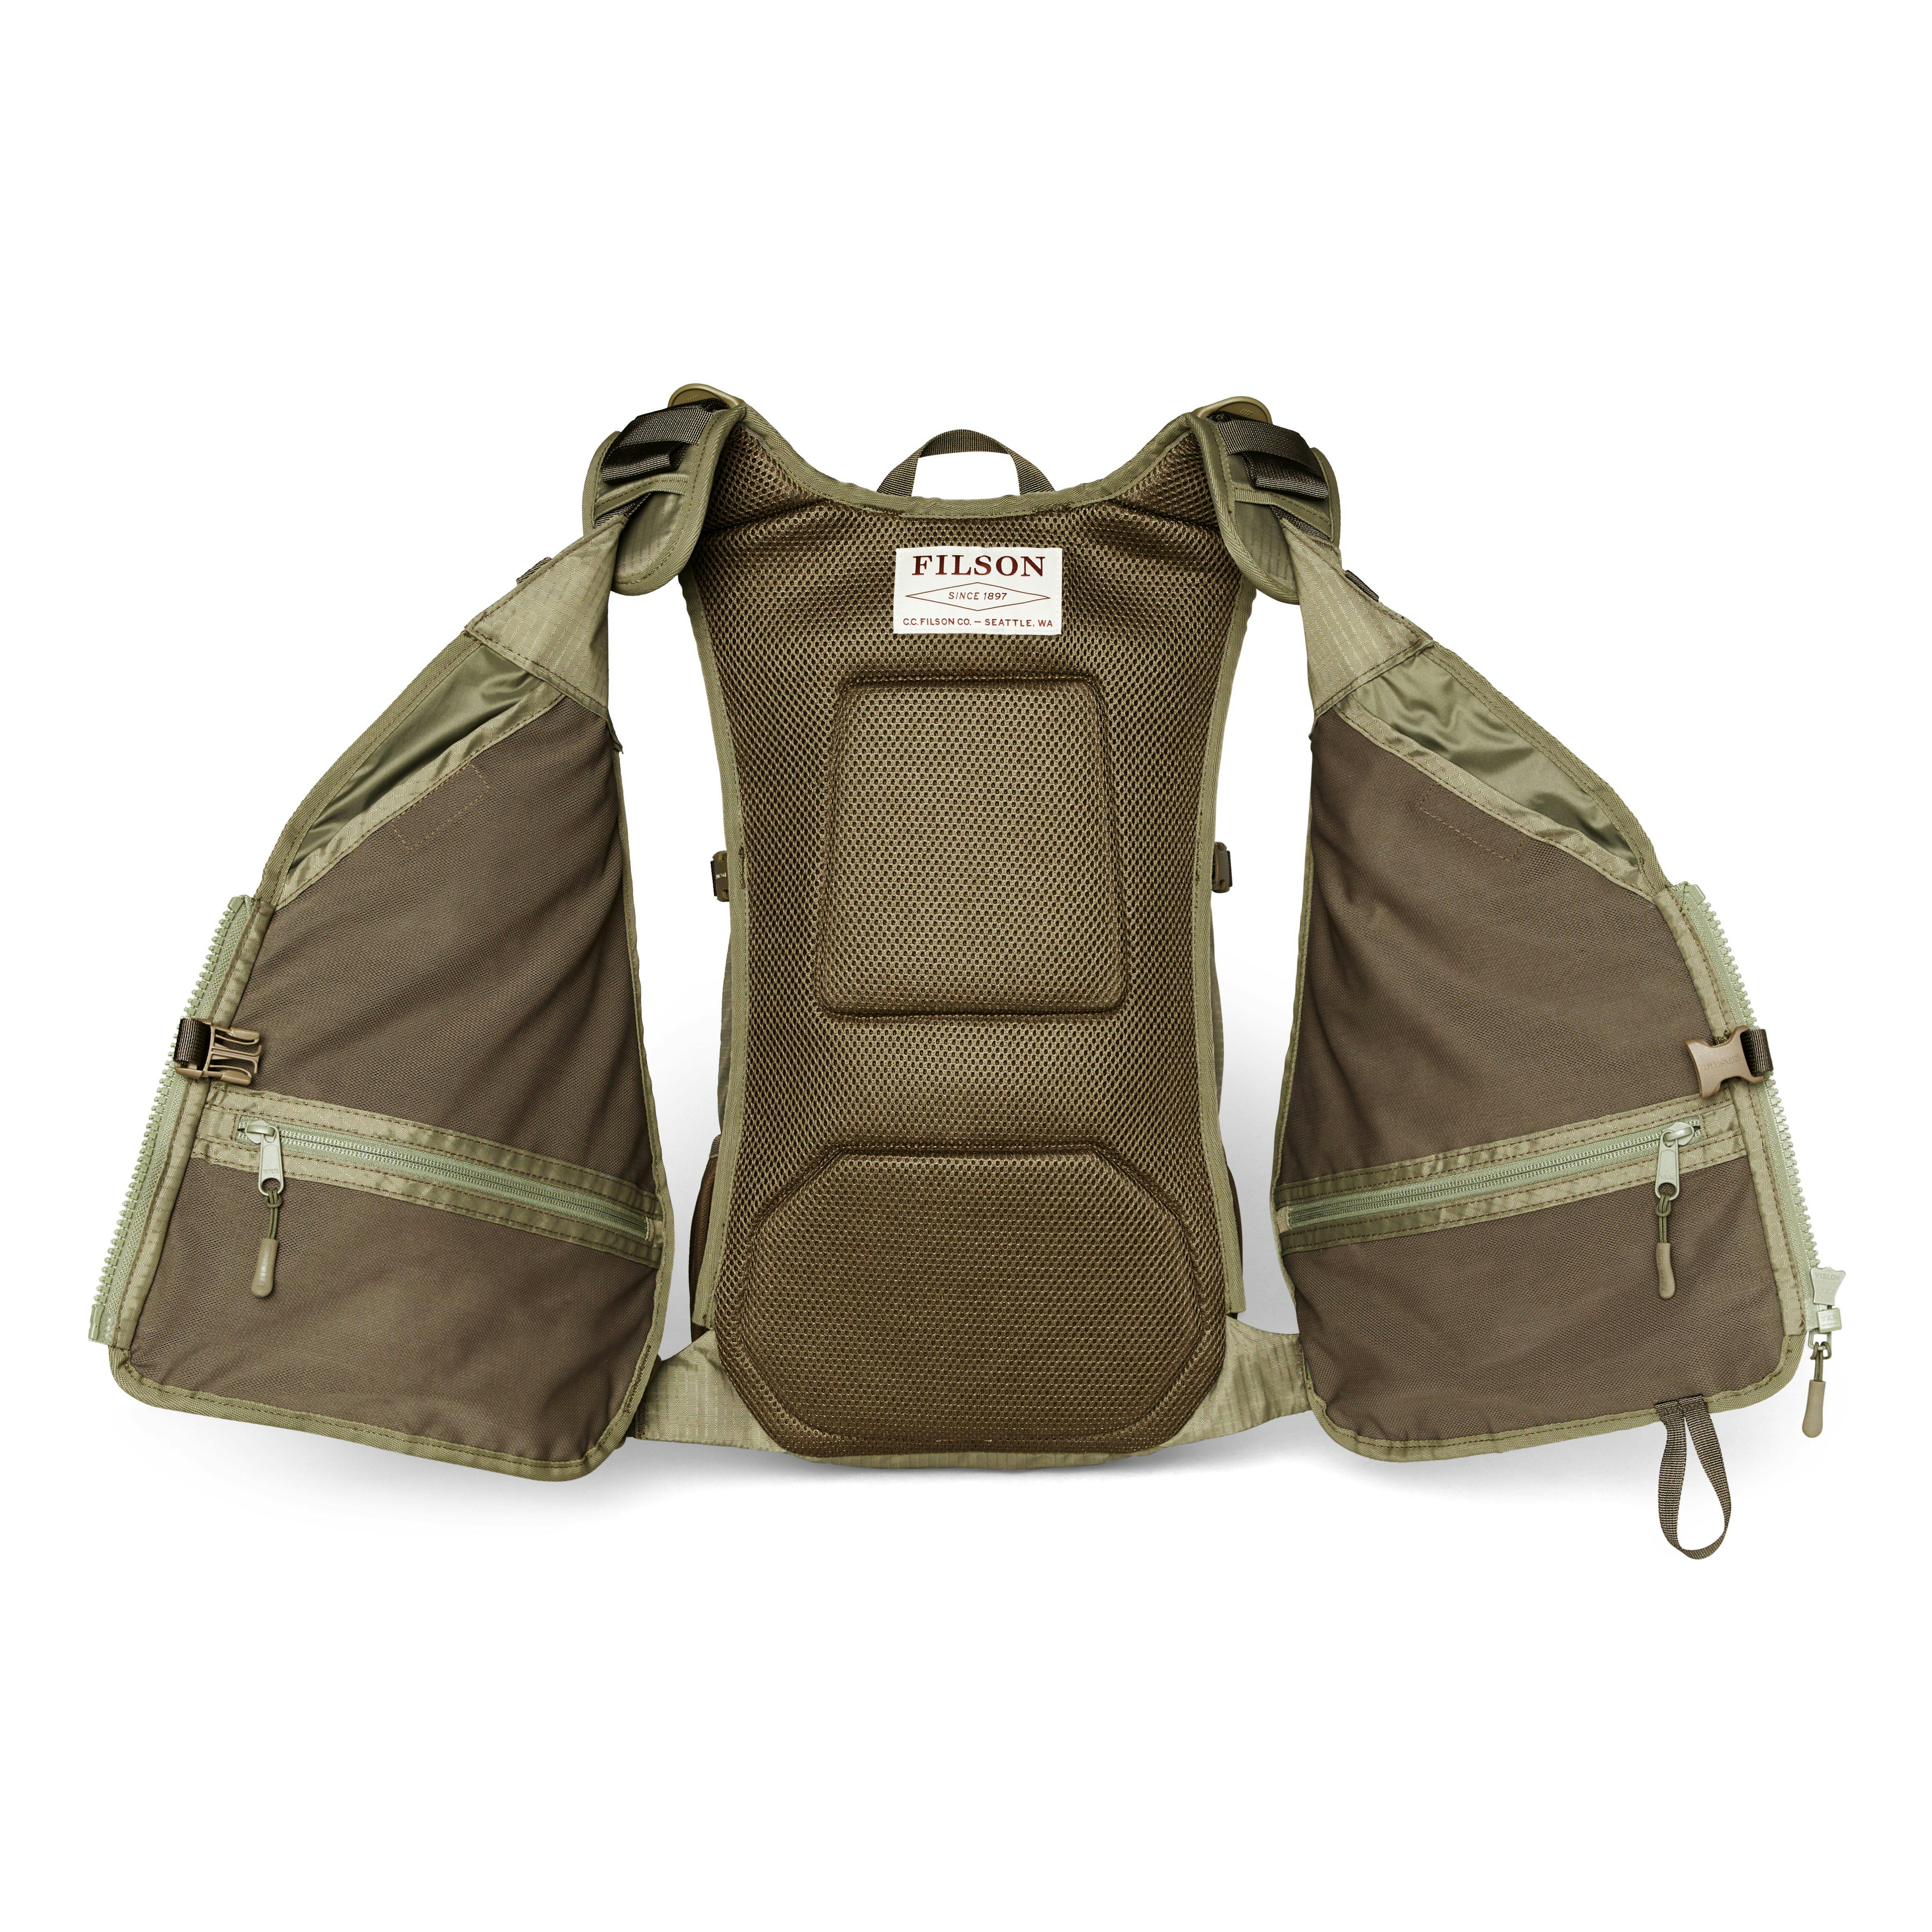 Filson Fishing Guide Vest Backpack - Vintage Olive, Backpacks